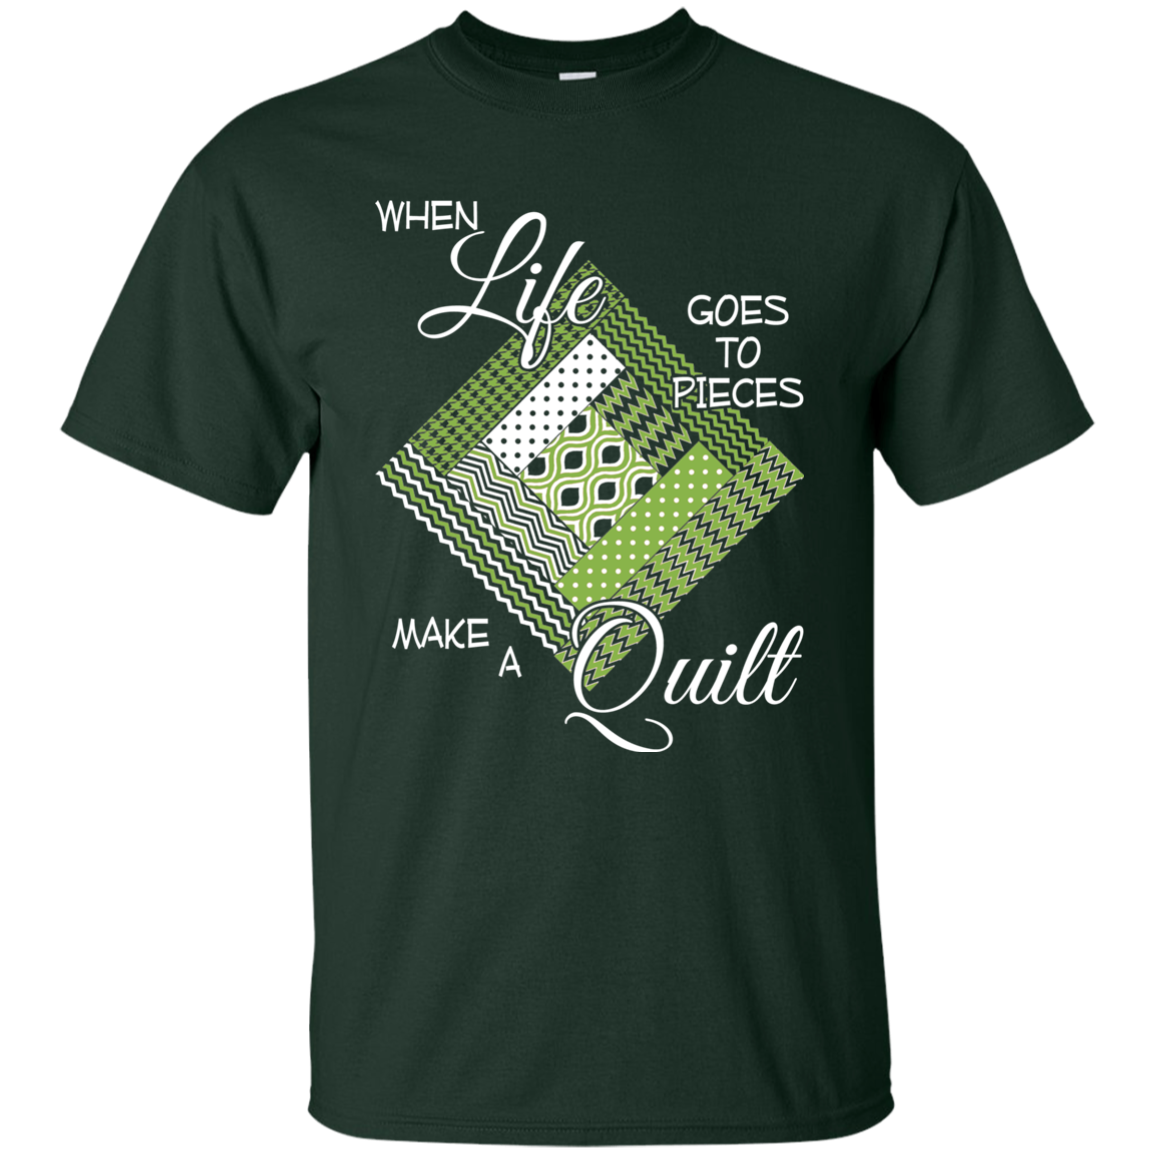 Make a Quilt (Greenery) Ultra Cotton T-Shirt